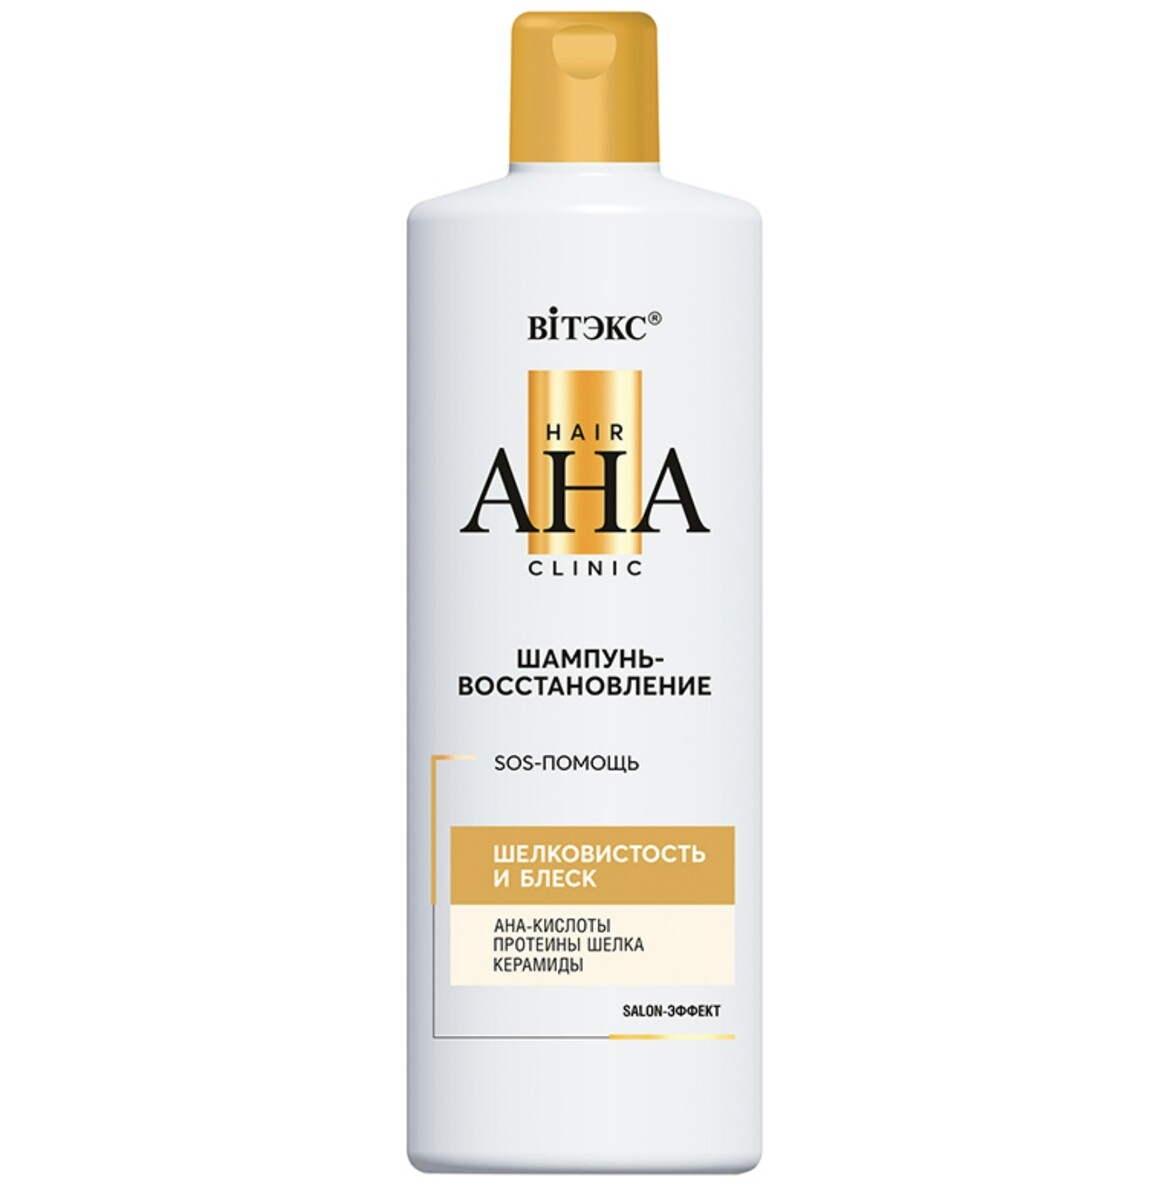 Hair aha clinic шампунь-восстановление для волос шелковистость и блеск 450мл шампунь для волос прелесть био с фитокератином восстановление и блеск 500 мл